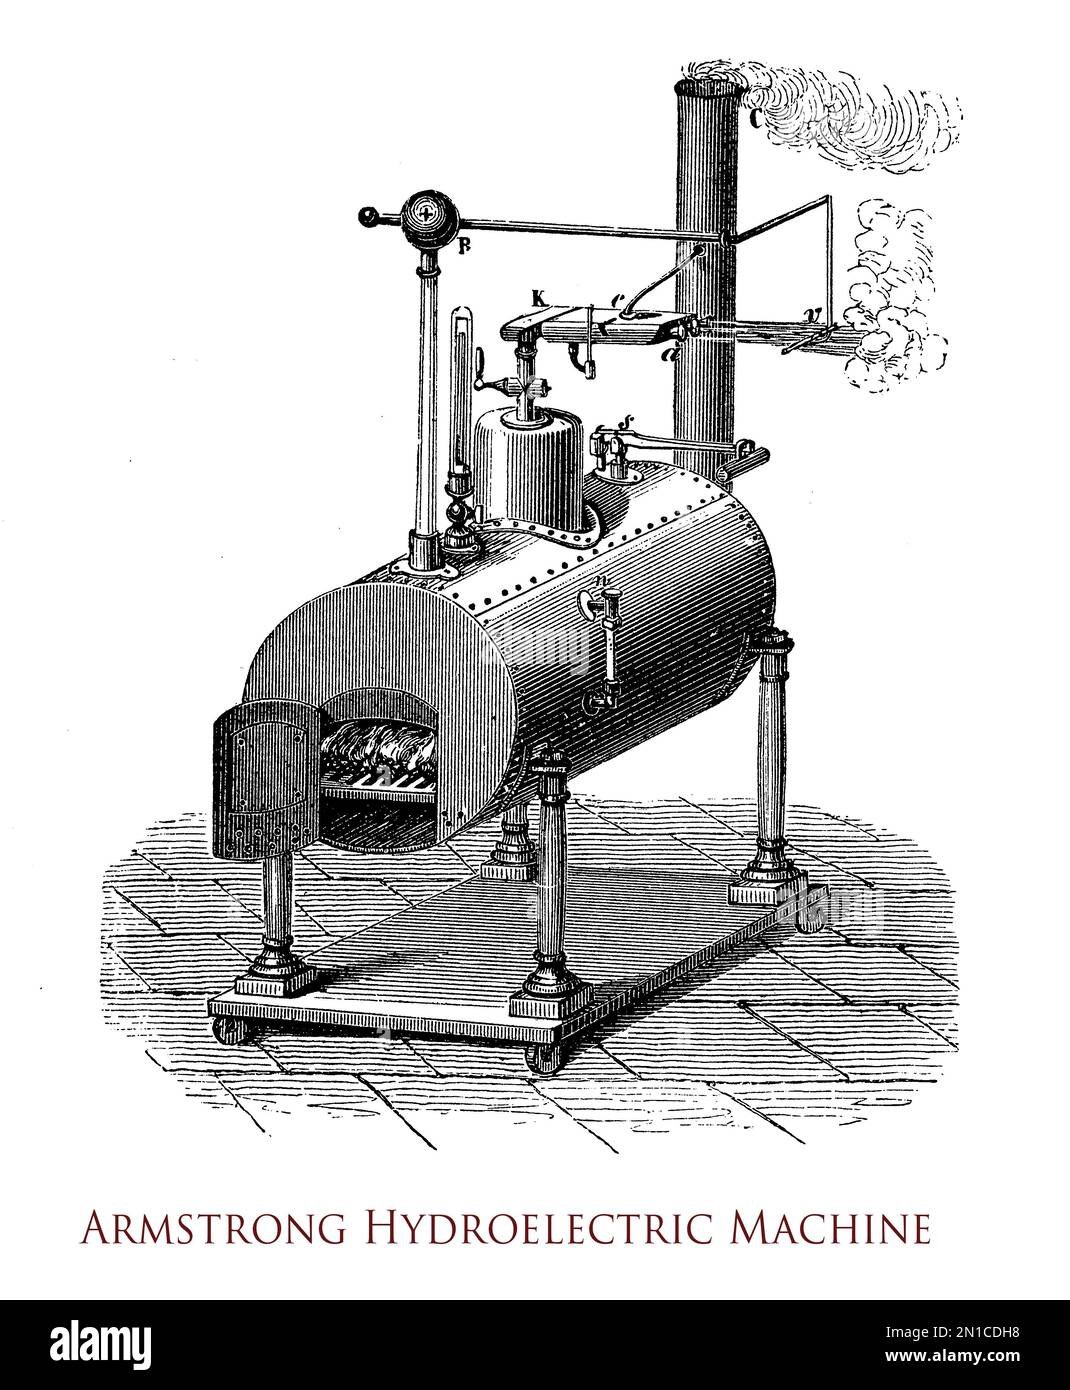 Armstrong Hydroelectric machine générateur d'électricité statique avec un appareil d'évaporation produisant des étincelles Banque D'Images